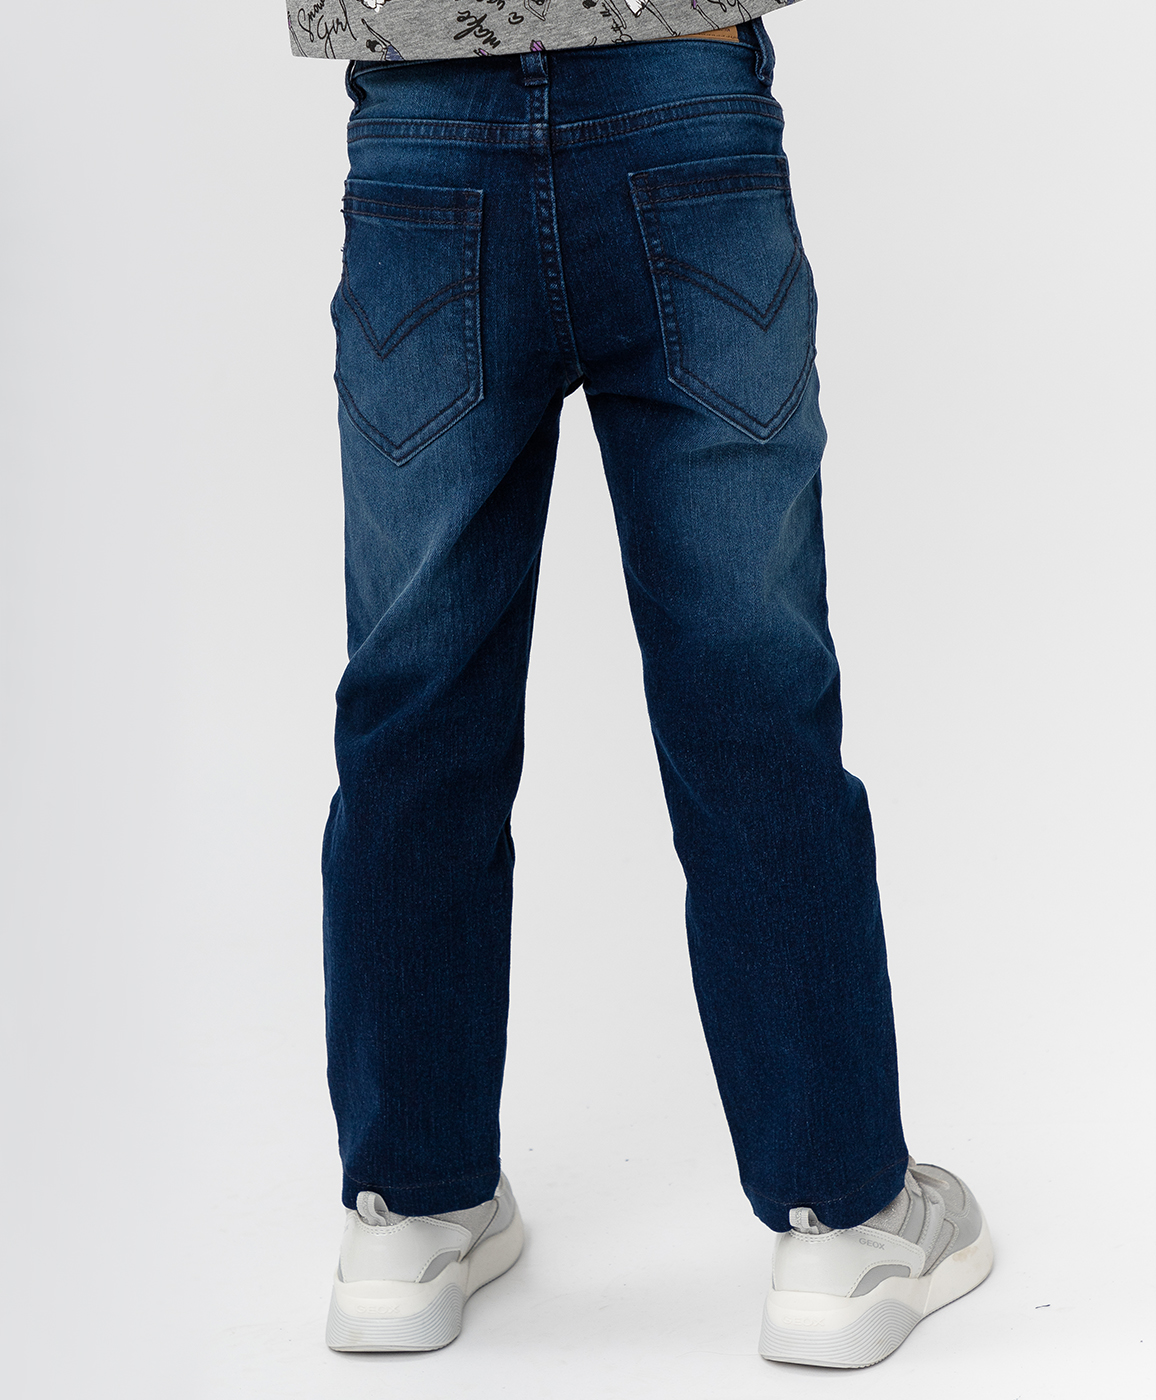 Темно-синие джинсы Button Blue 220BBGMC6302D500, размер 110, цвет синий regular fit / прямые - фото 2